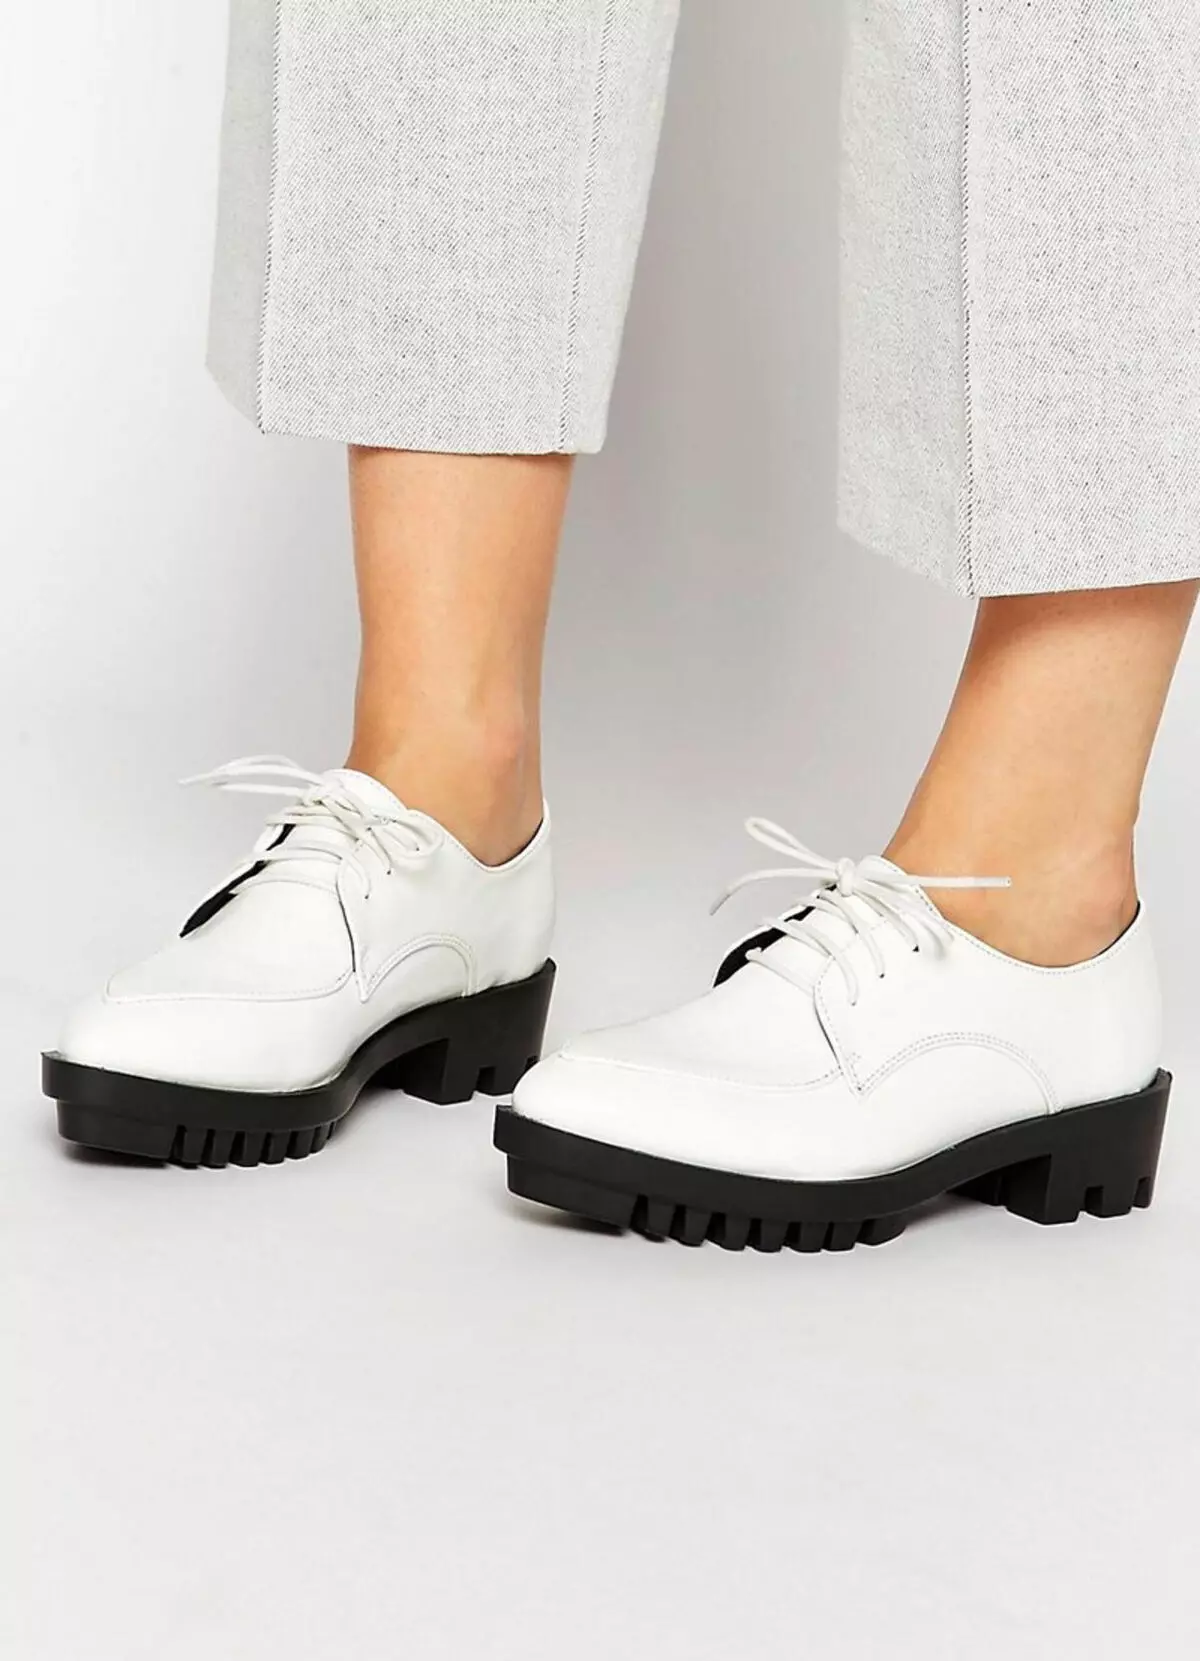 Ботинки на массивной подошве. Туфли на массивной подошве женские. Ботинки на белой подошве женские. Черная обувь с белой подошвой. Белая обувь на массивной подошве.